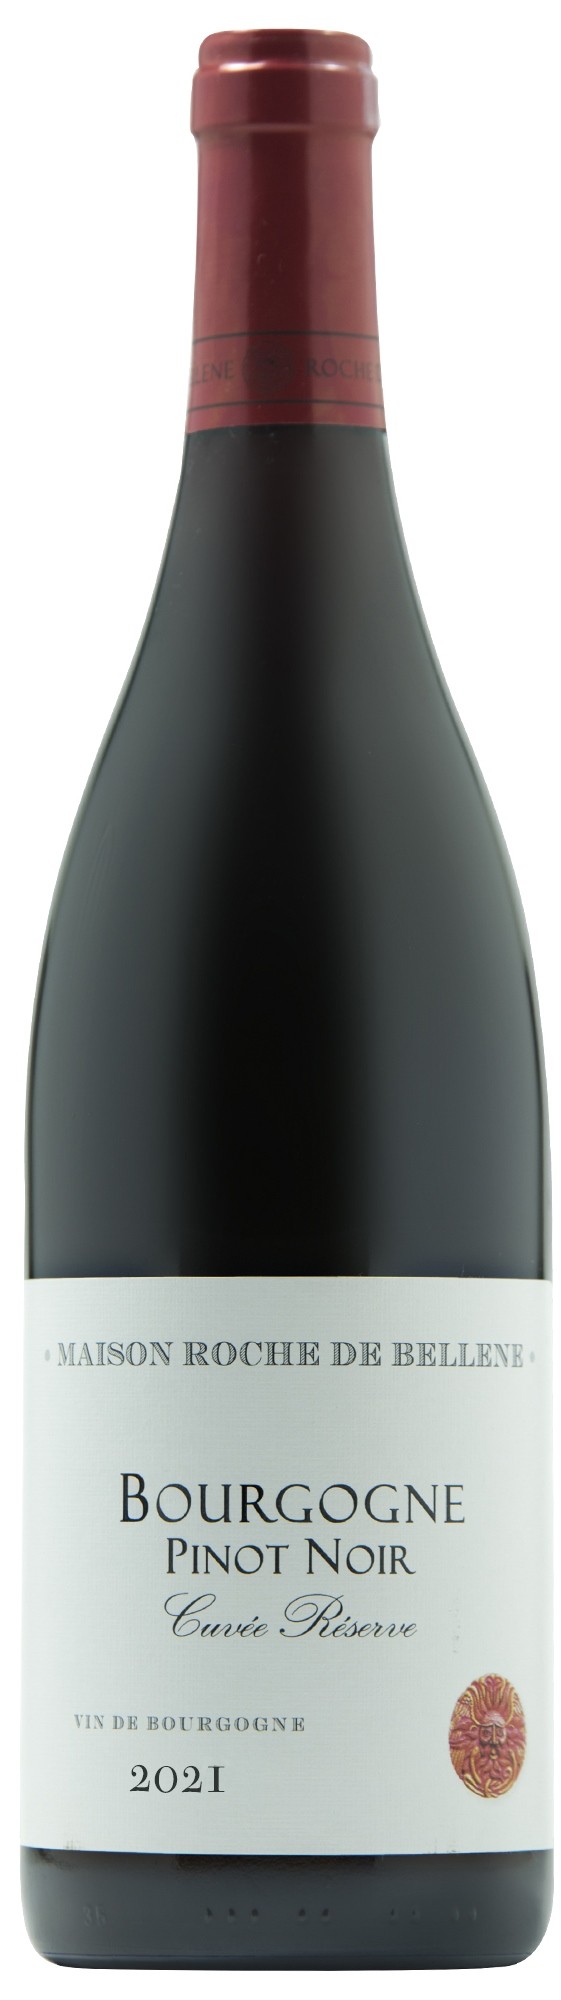 Bourgogne Pinot Noir 2021 Cuvée Réserve, Maison Roche de Bellene